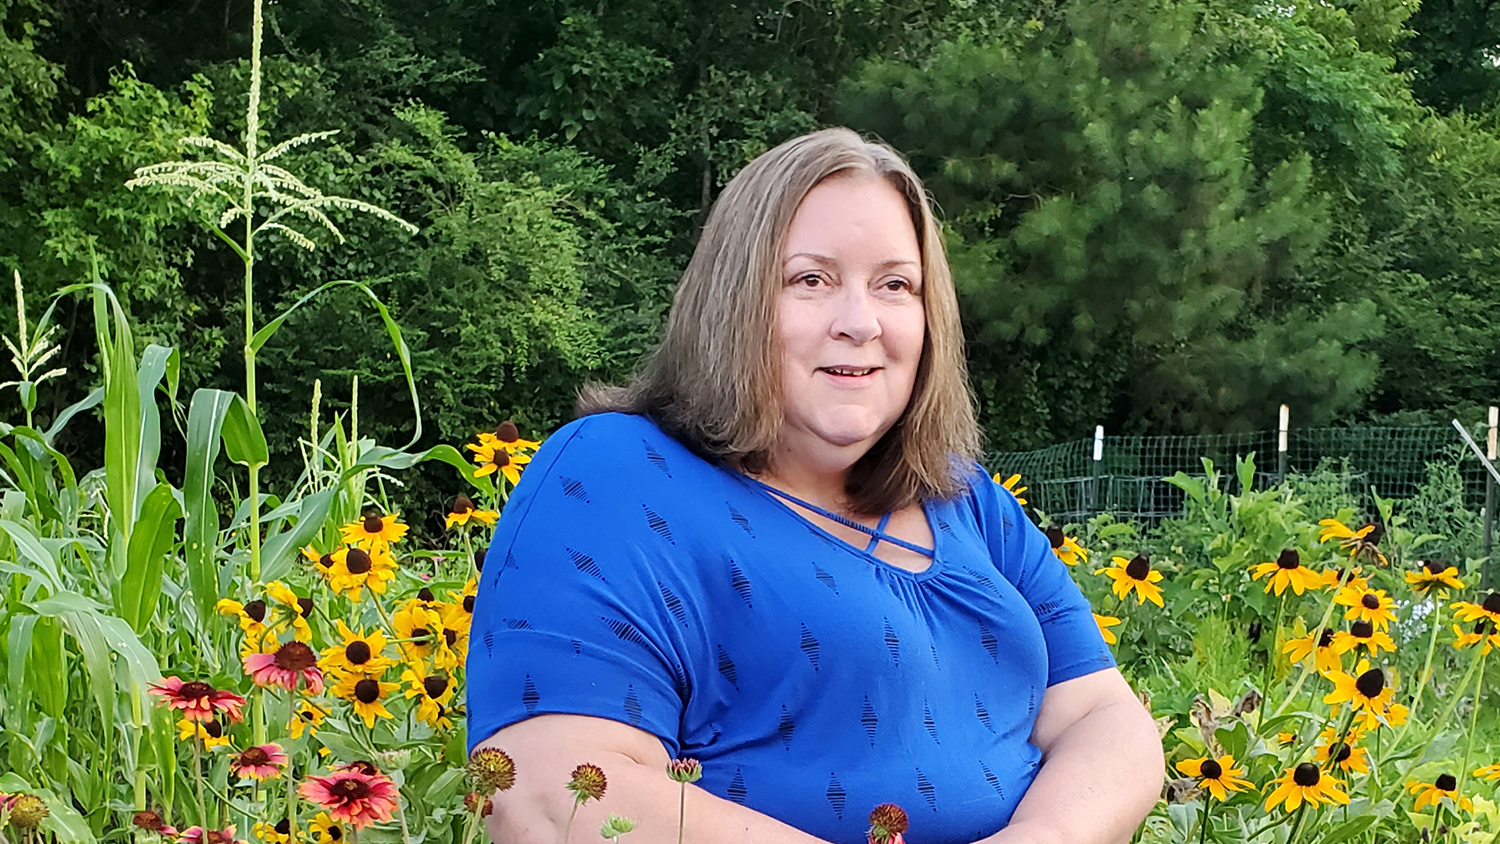 Patty Fields sitting in a field of flowers